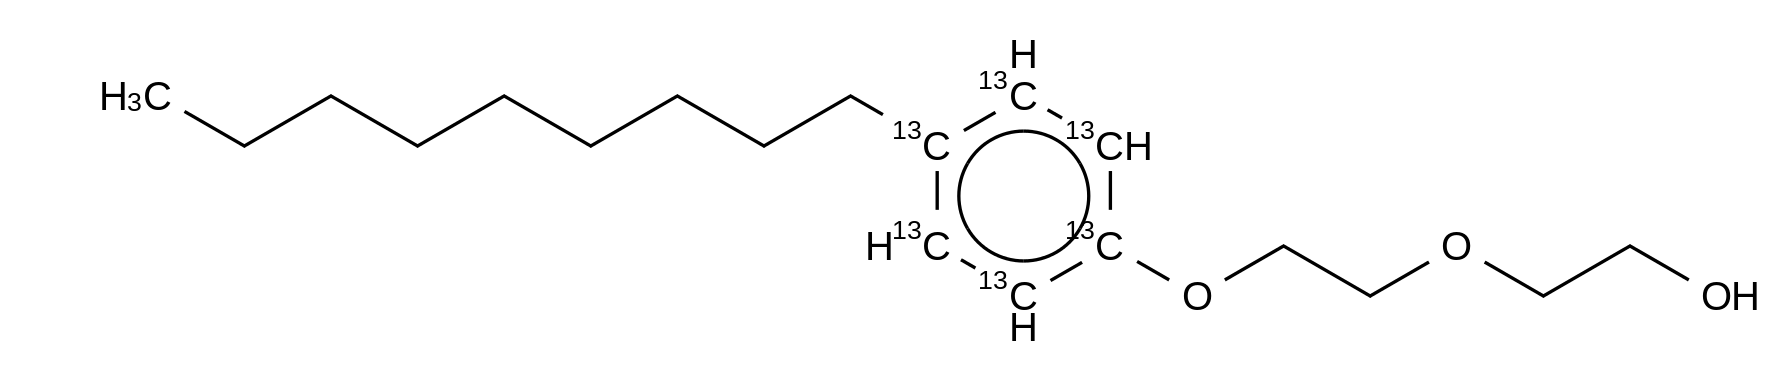 4-Nonyl Phenol-<sup>13</sup>C<sub>6</sub> Diethoxylate